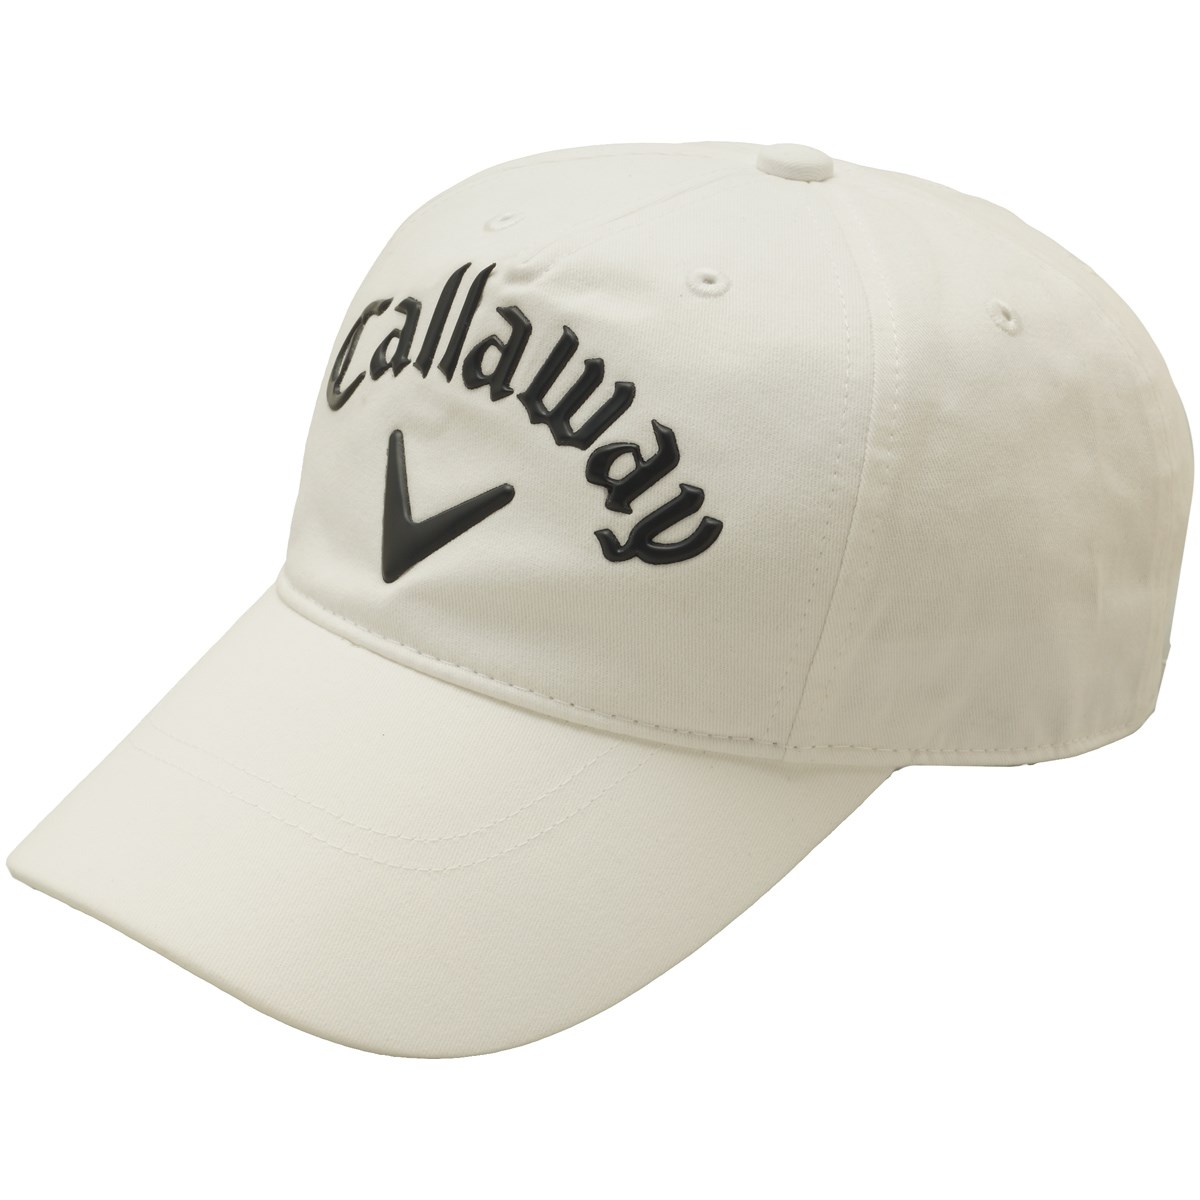 キャロウェイゴルフ(Callaway Golf) 3Dロゴキャップ 